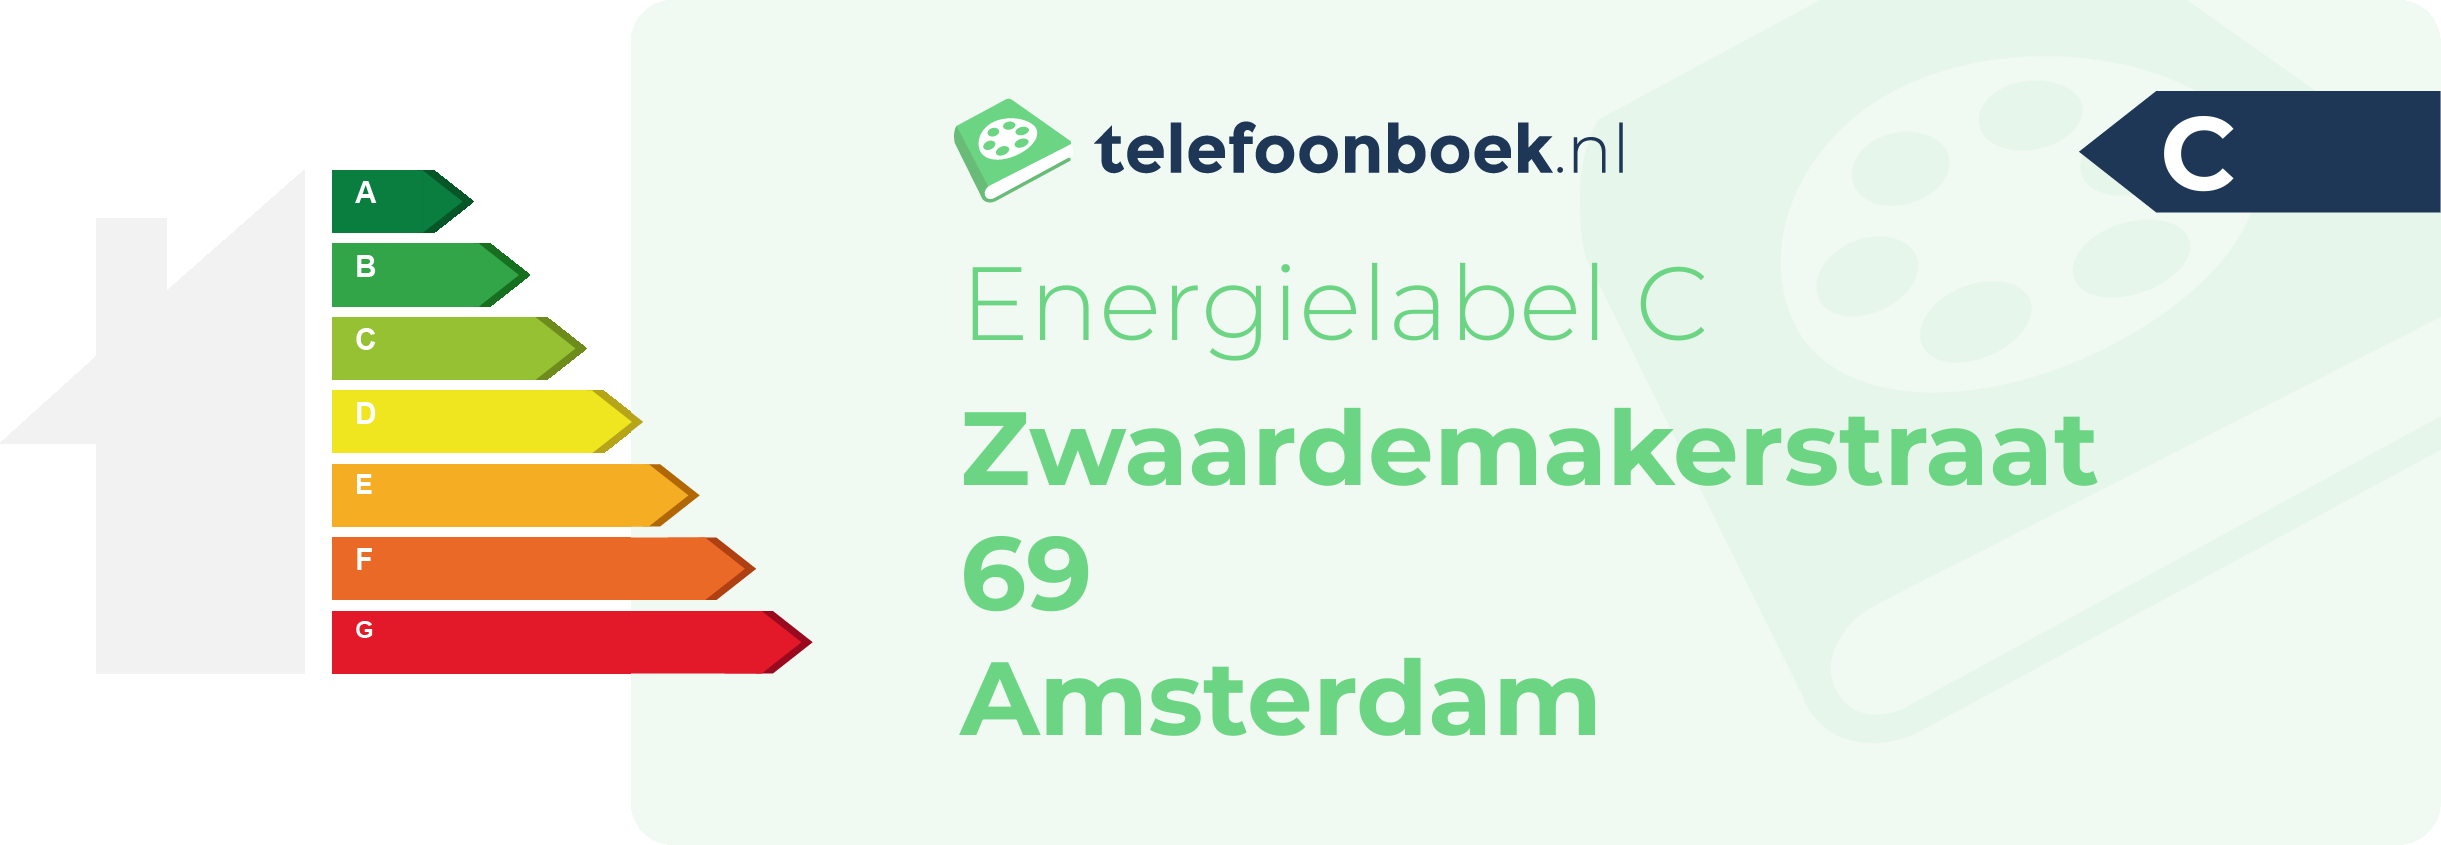 Energielabel Zwaardemakerstraat 69 Amsterdam